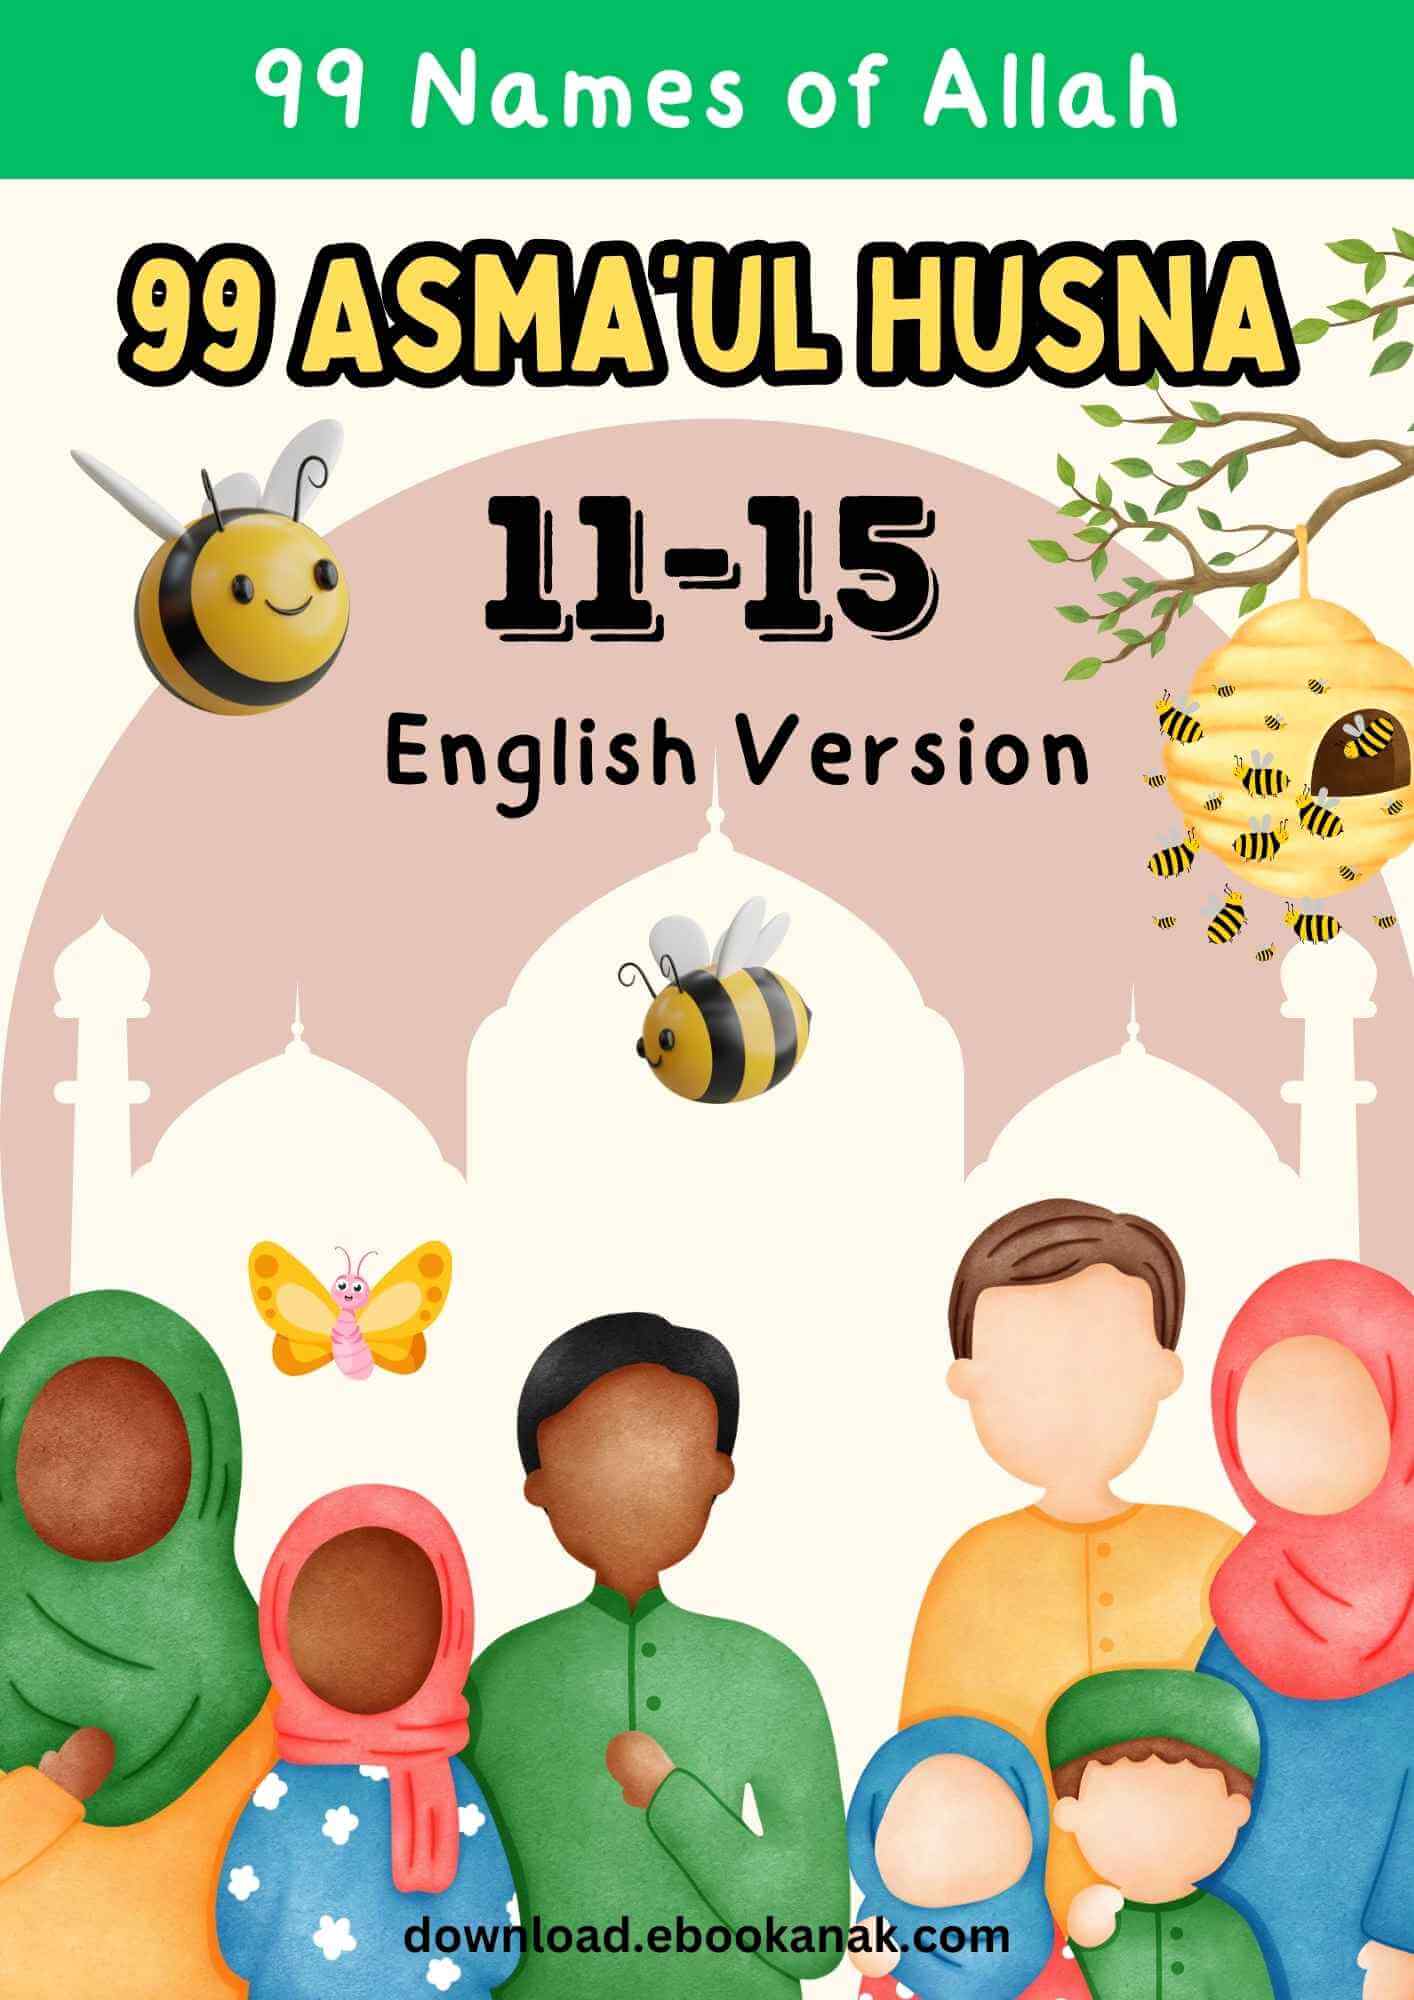 Download Ebook: 99 Names of Allah; Asma'ul Husna 11-15